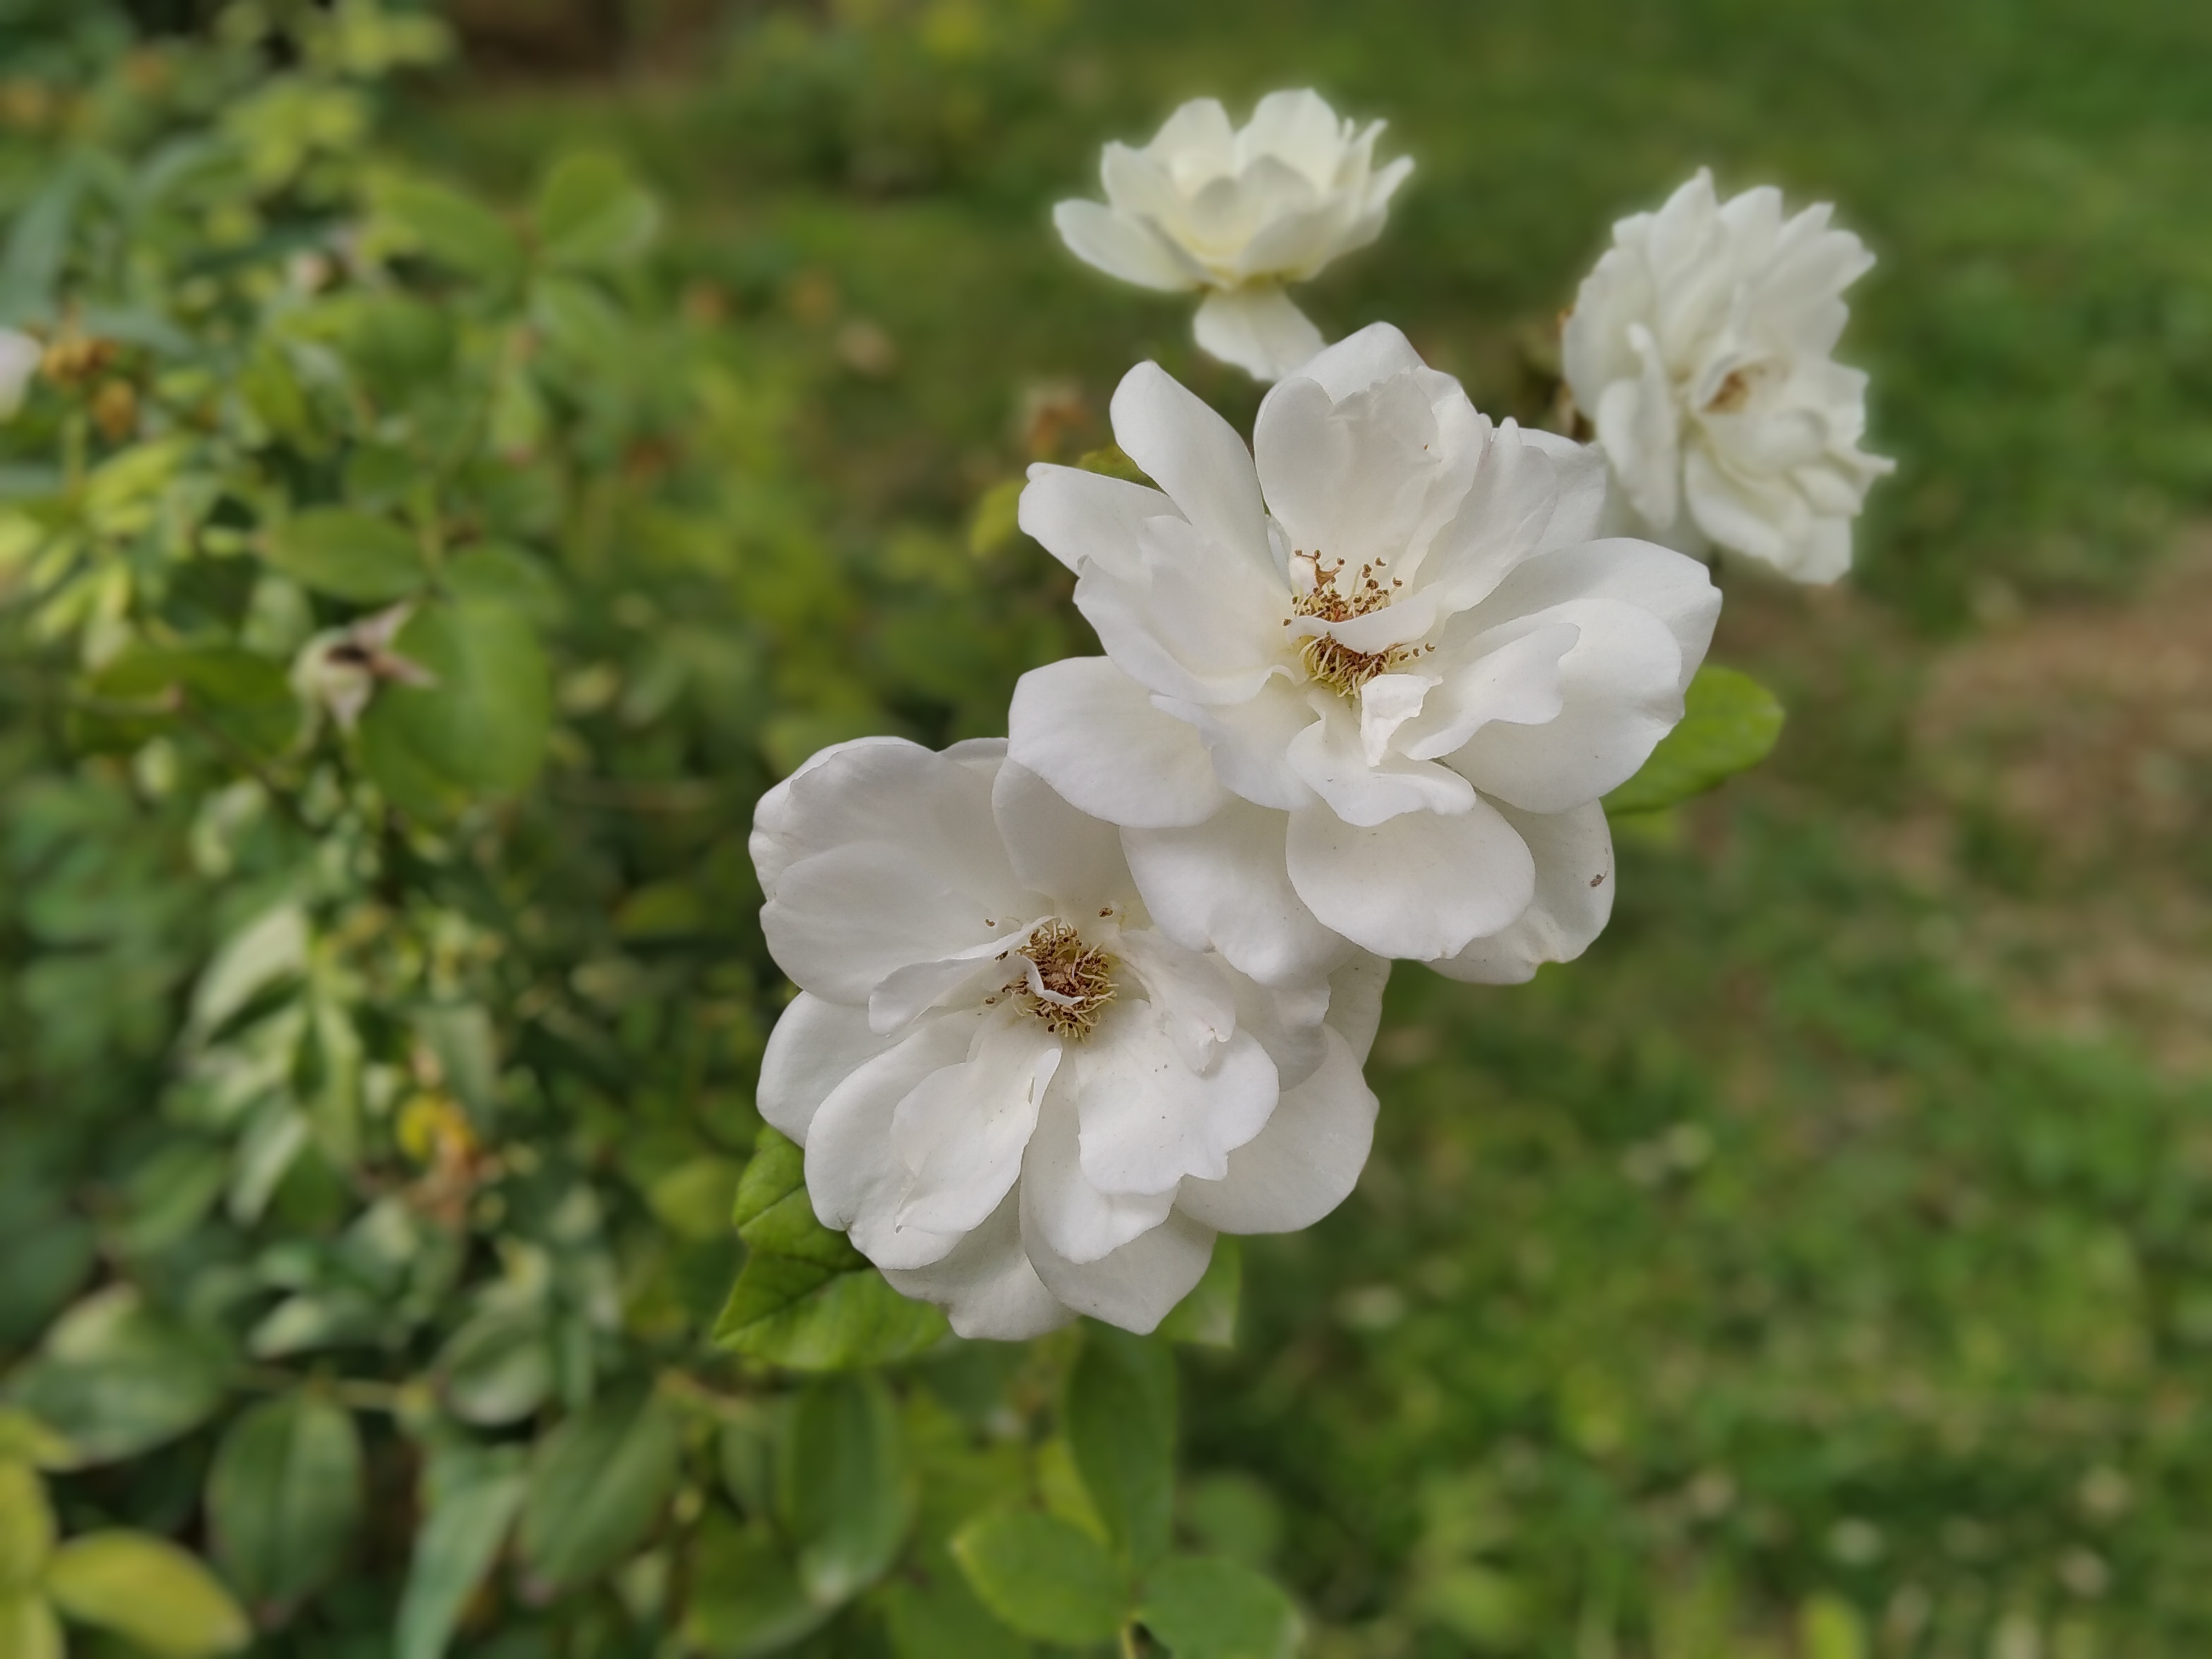 نمونه عکس ثبت شده توسط دوربین اصلی شیائومی ردمی ۸ در حالت پرتره - گل سفید